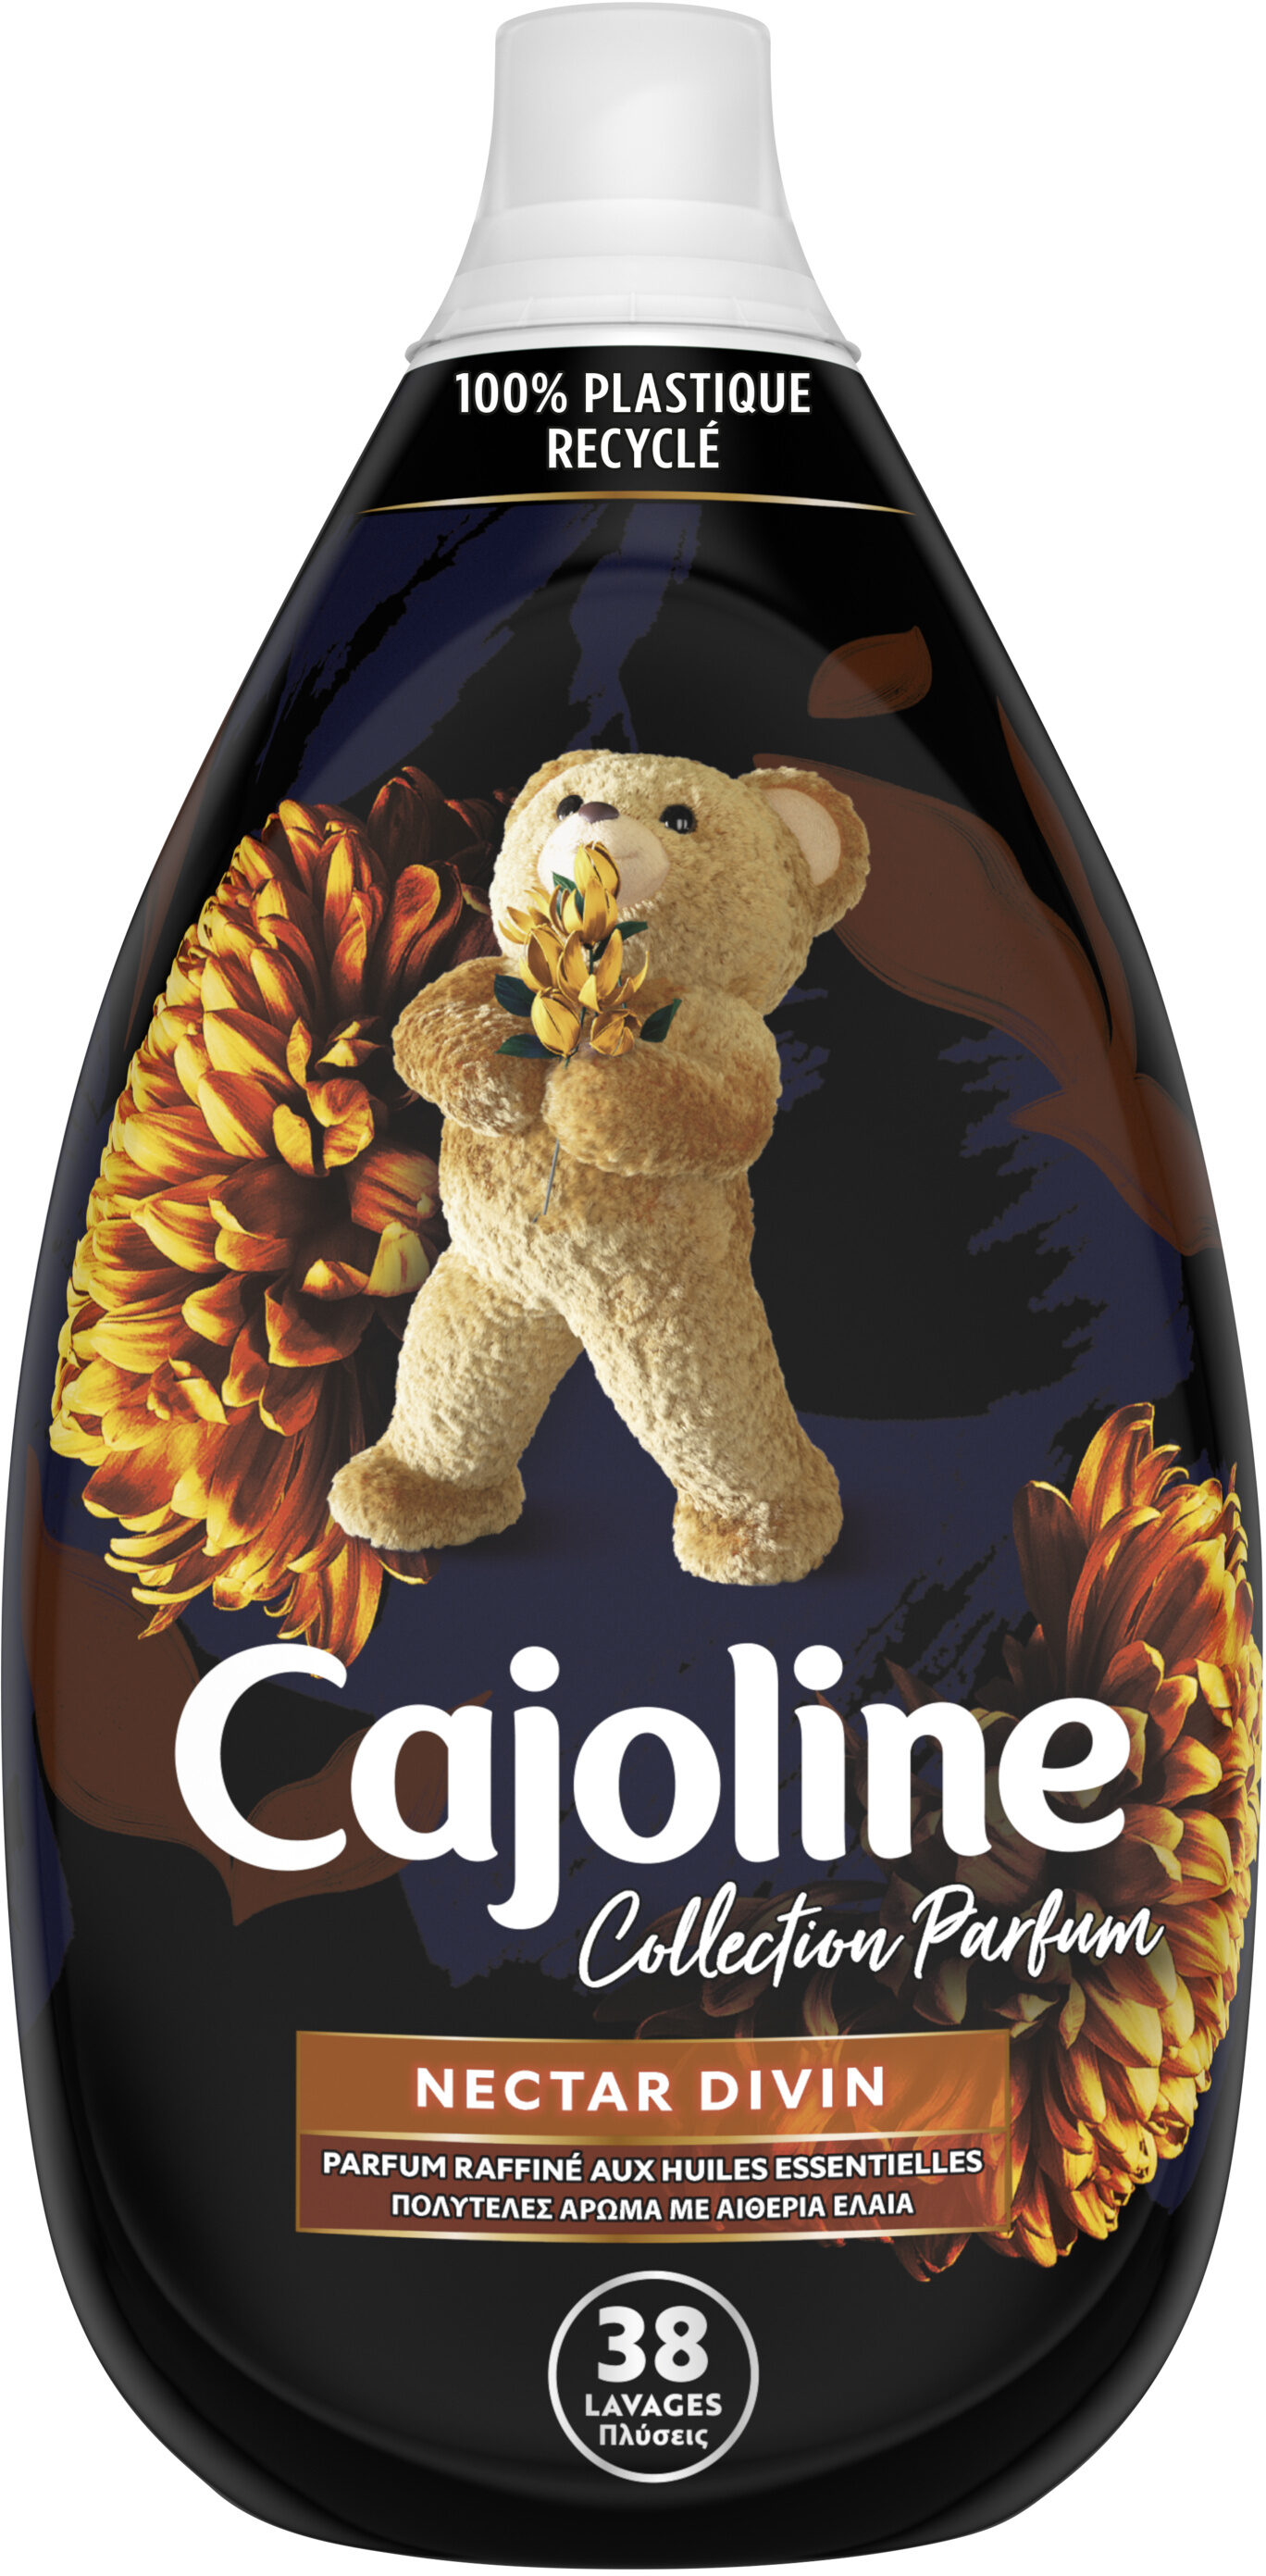 CAJOLINE Collection Parfum Assouplissant Concentré Nectar Divin 38 Lavages, 950ml - Product - fr